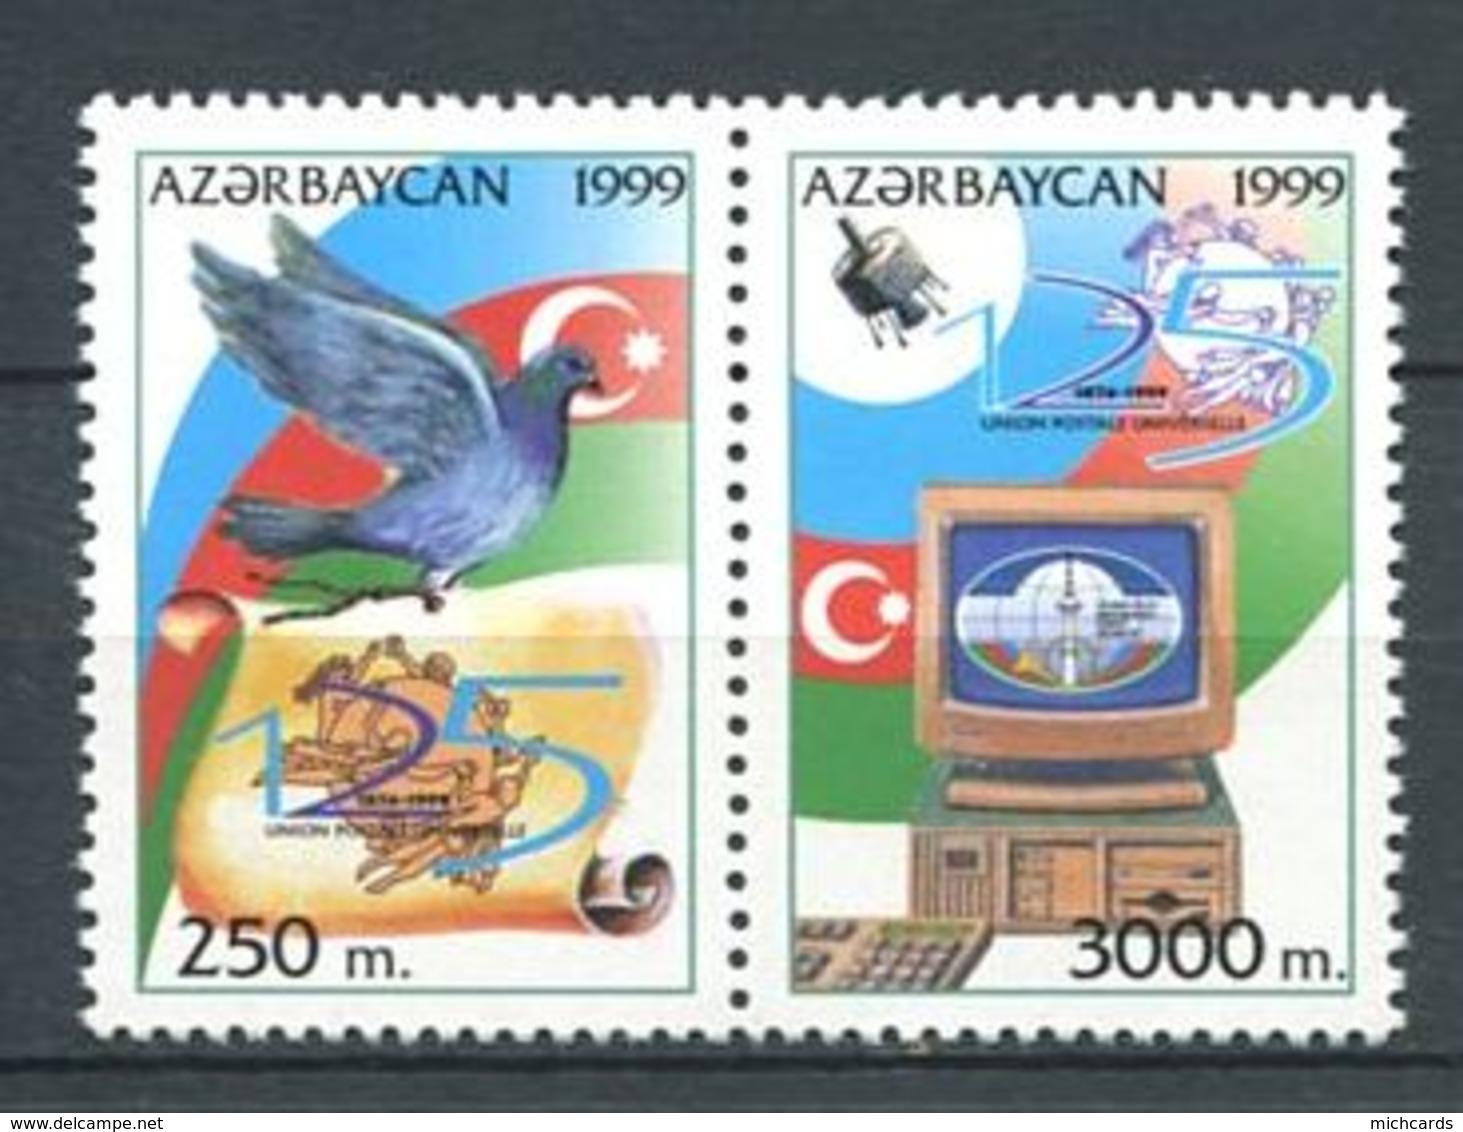 242 AZERBAIDJAN 1999 - Yvert 392 D/E - Embleme Pigeon Satellite - Neuf ** (MNH) Sans Trace De Charniere - Azerbaïdjan